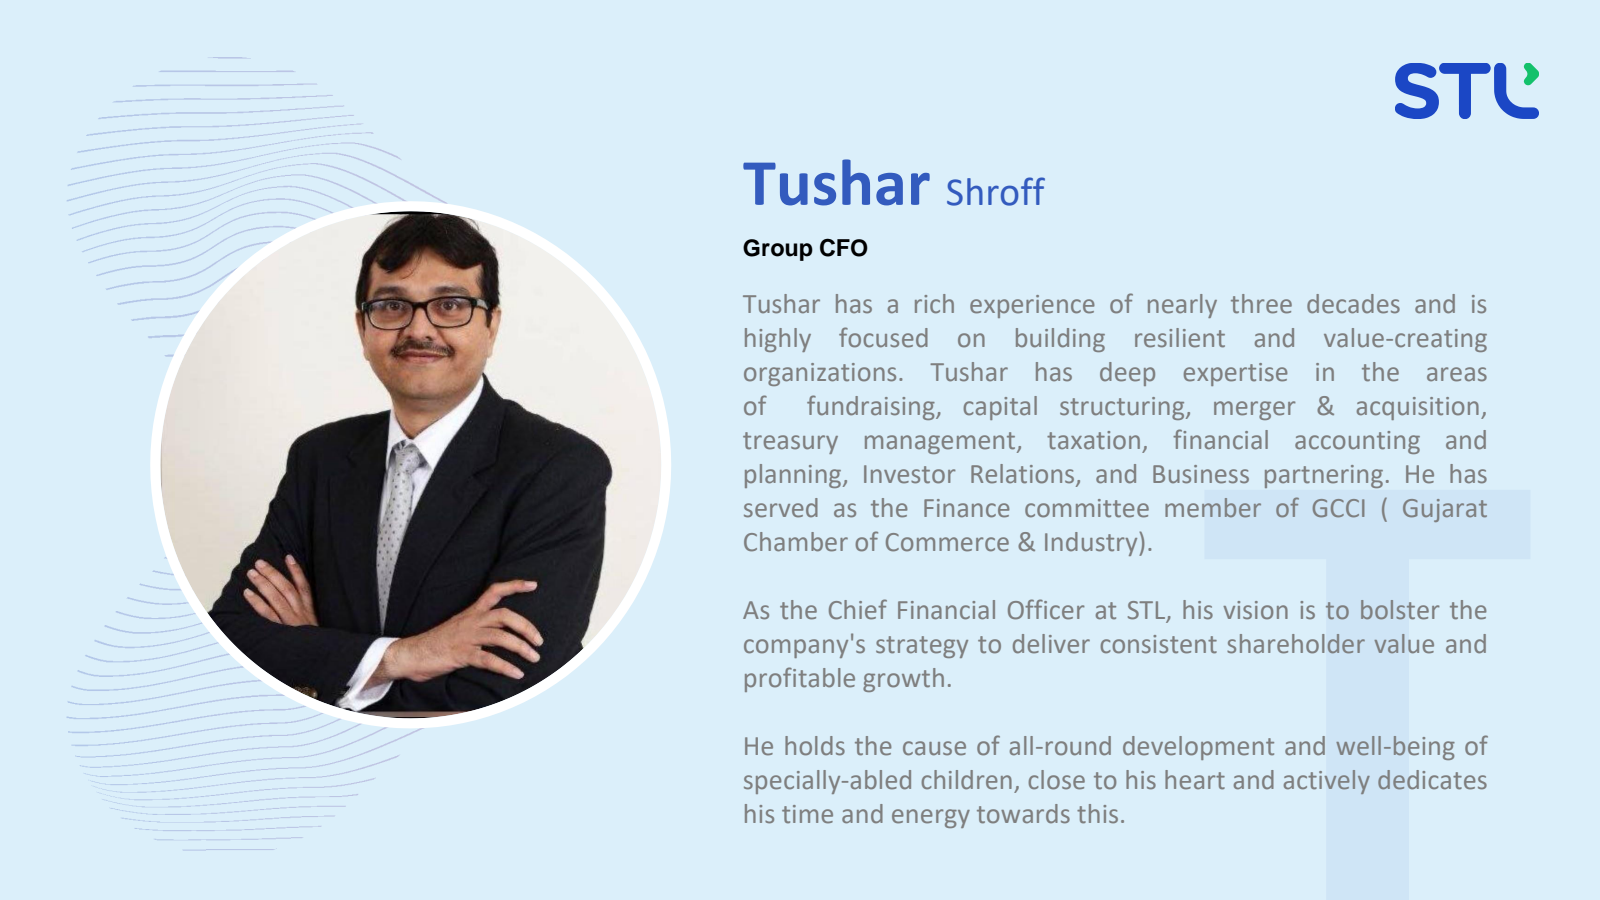 Tushar Shroff 
Group